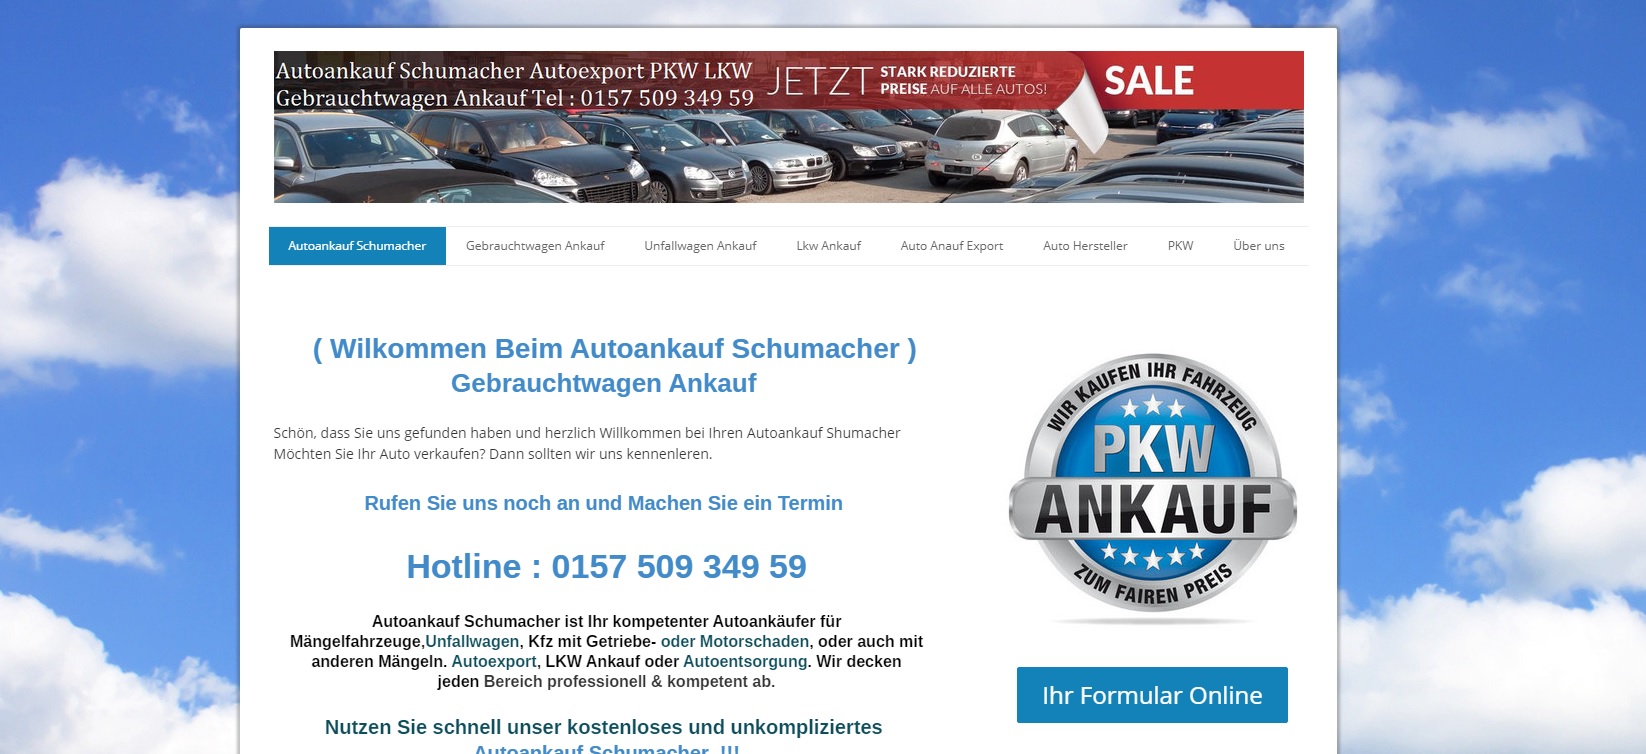 autoankauf luxemburg von autoankauf schumacher - Autoankauf Luxemburg von Autoankauf Schumacher